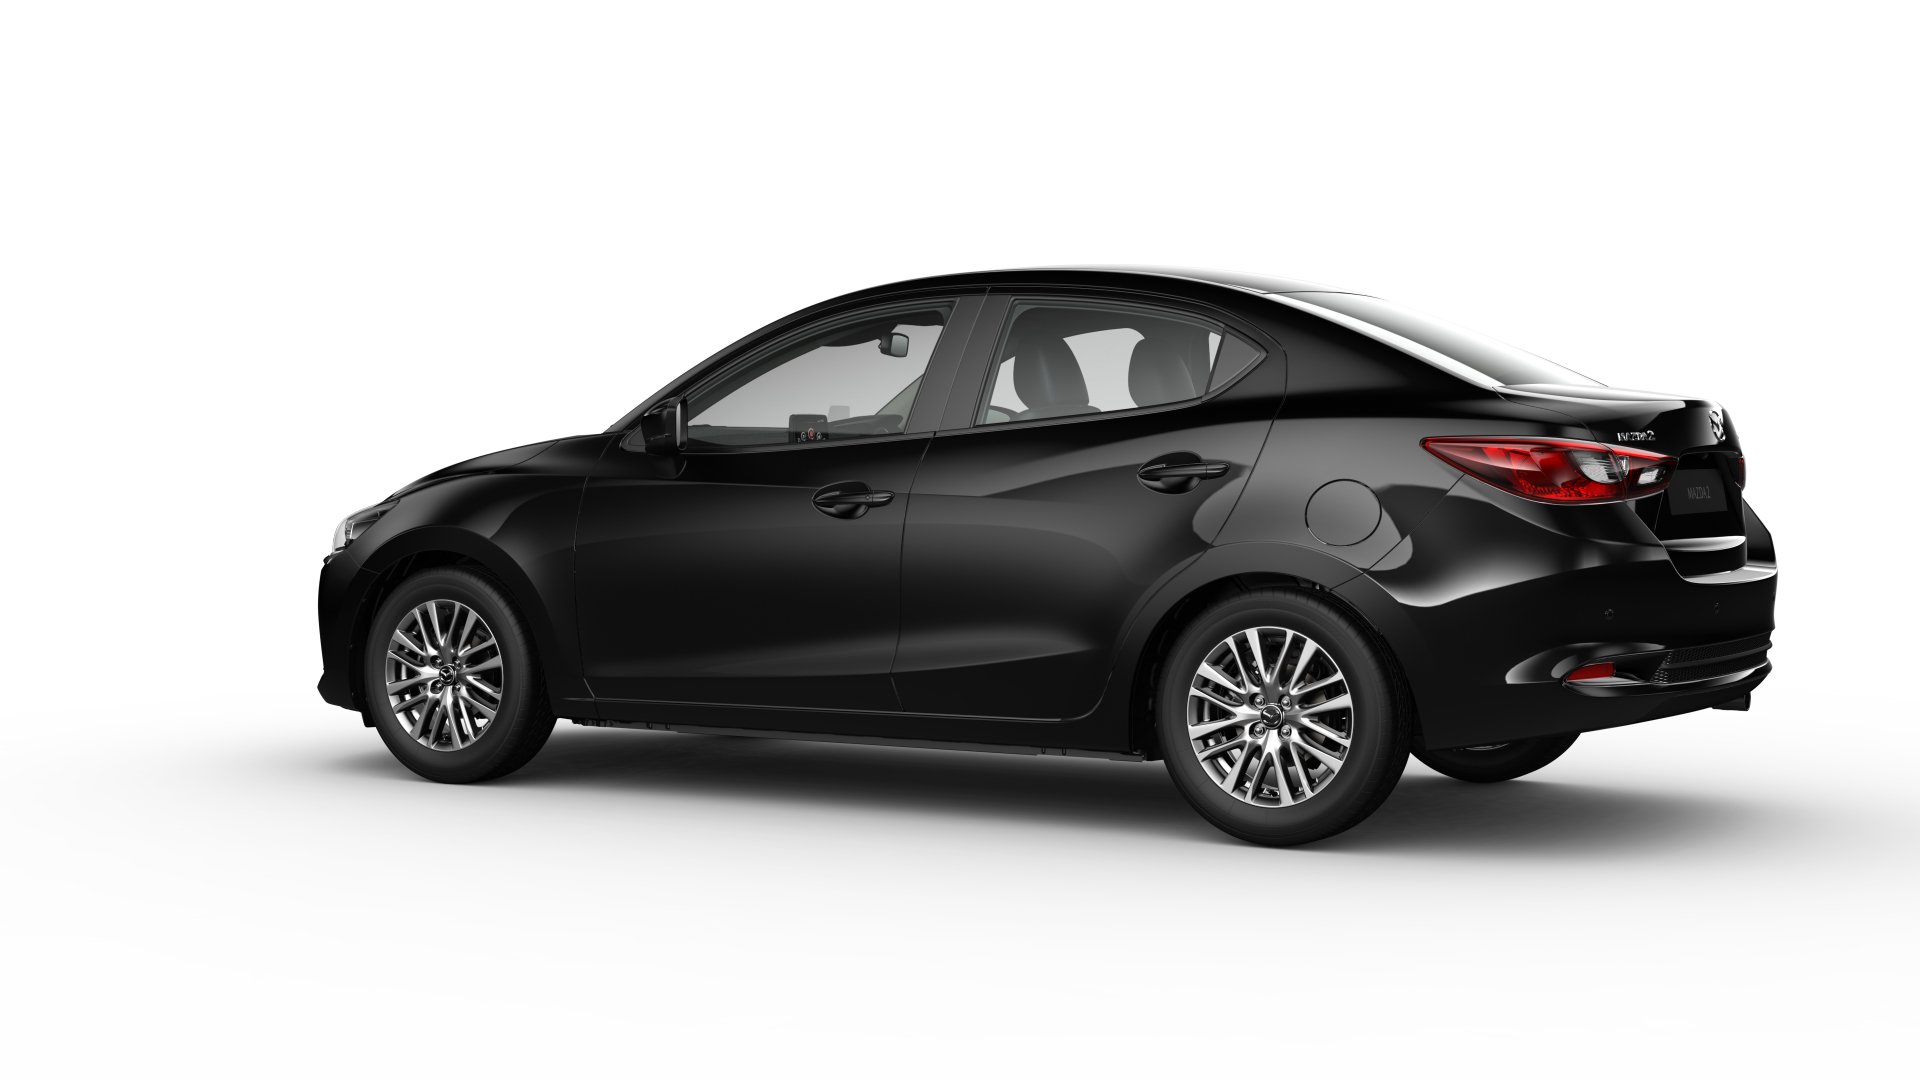 Mazda 2 exterior - Side Profile